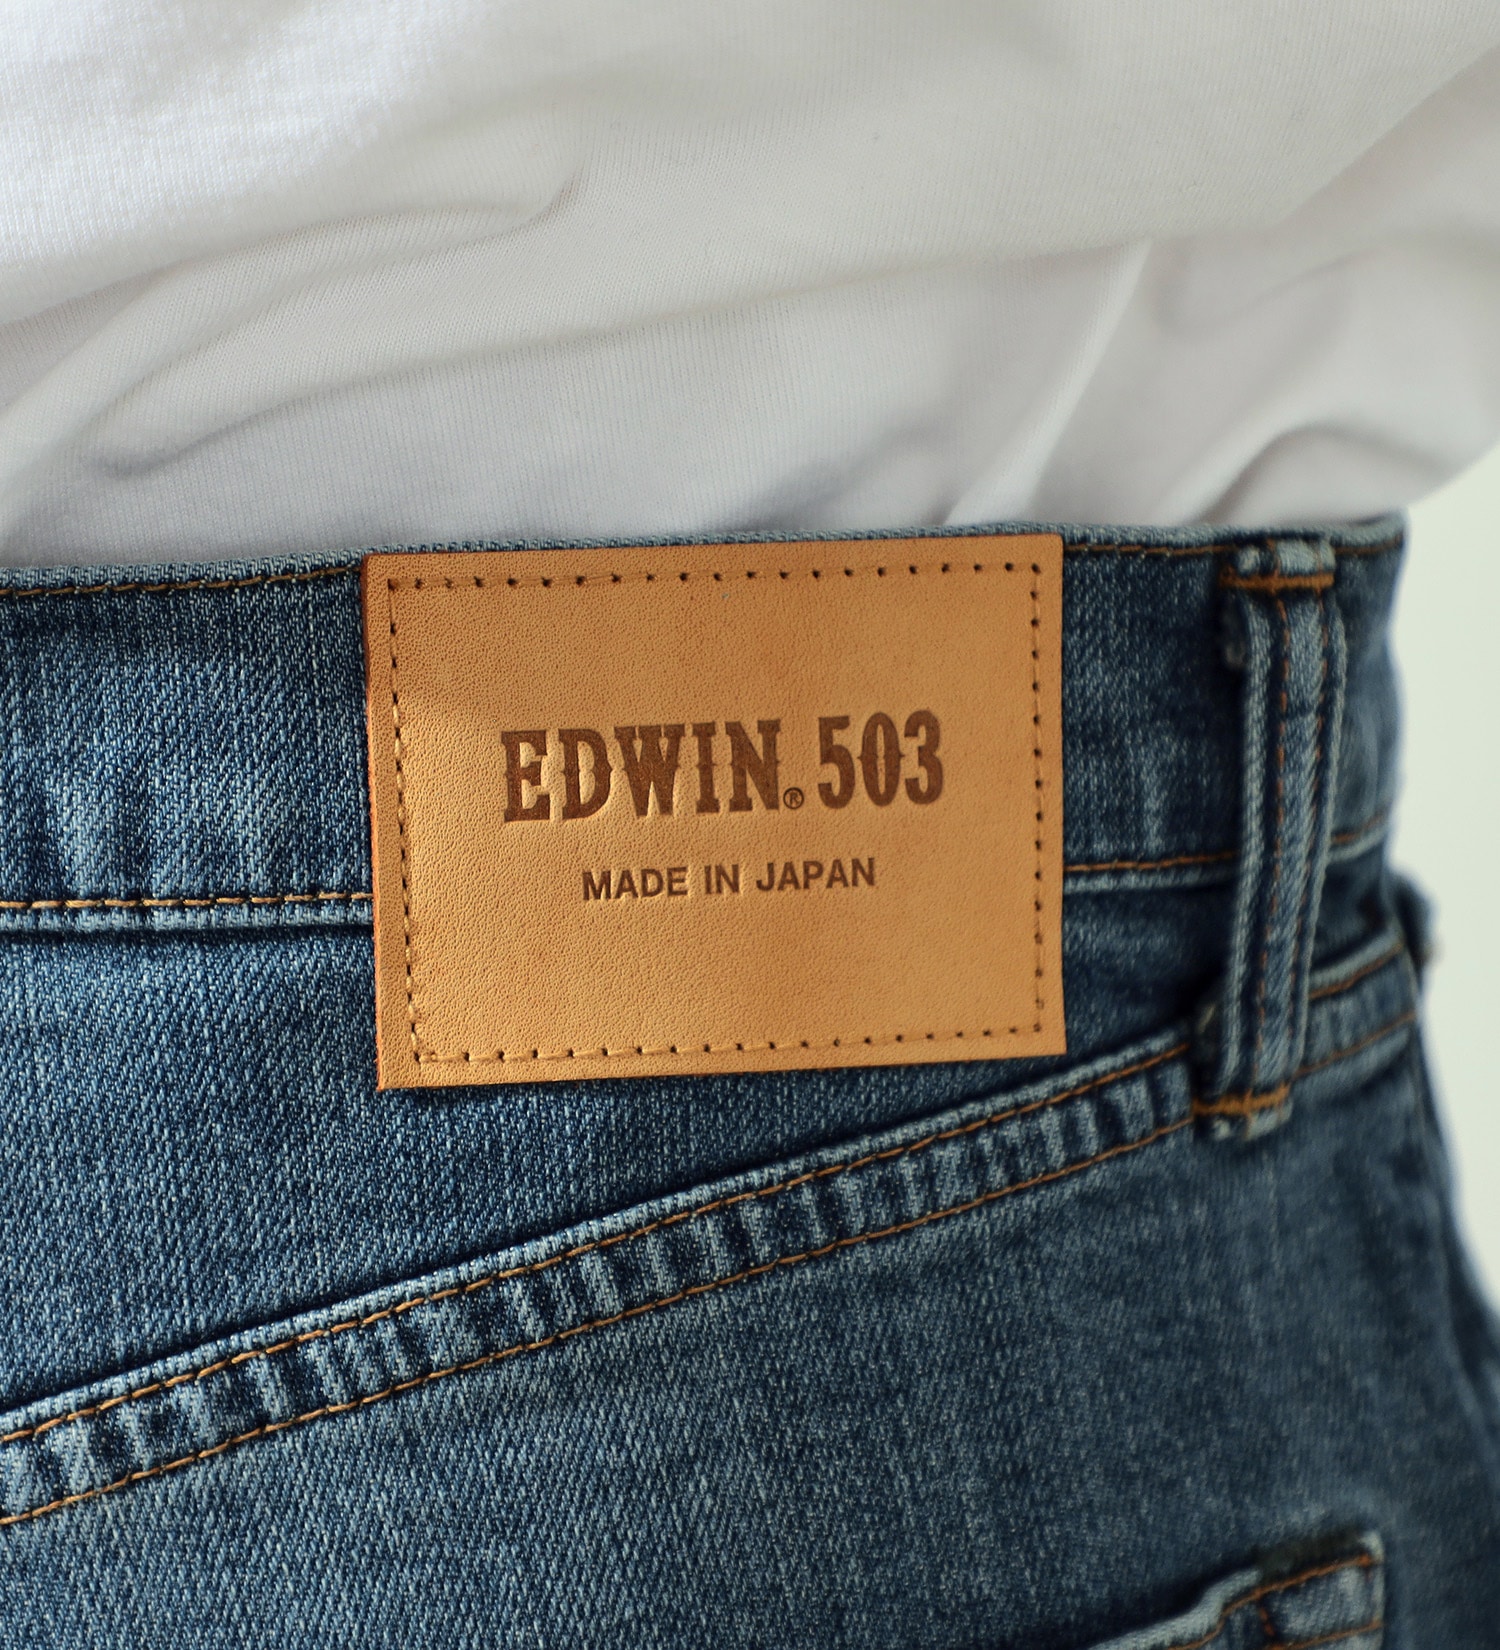 EDWIN(エドウイン)の503 レギュラーストレートパンツ REGULAR STRAIGHT MADE IN JAPAN 日本製|パンツ/デニムパンツ/メンズ|中色ブルー3